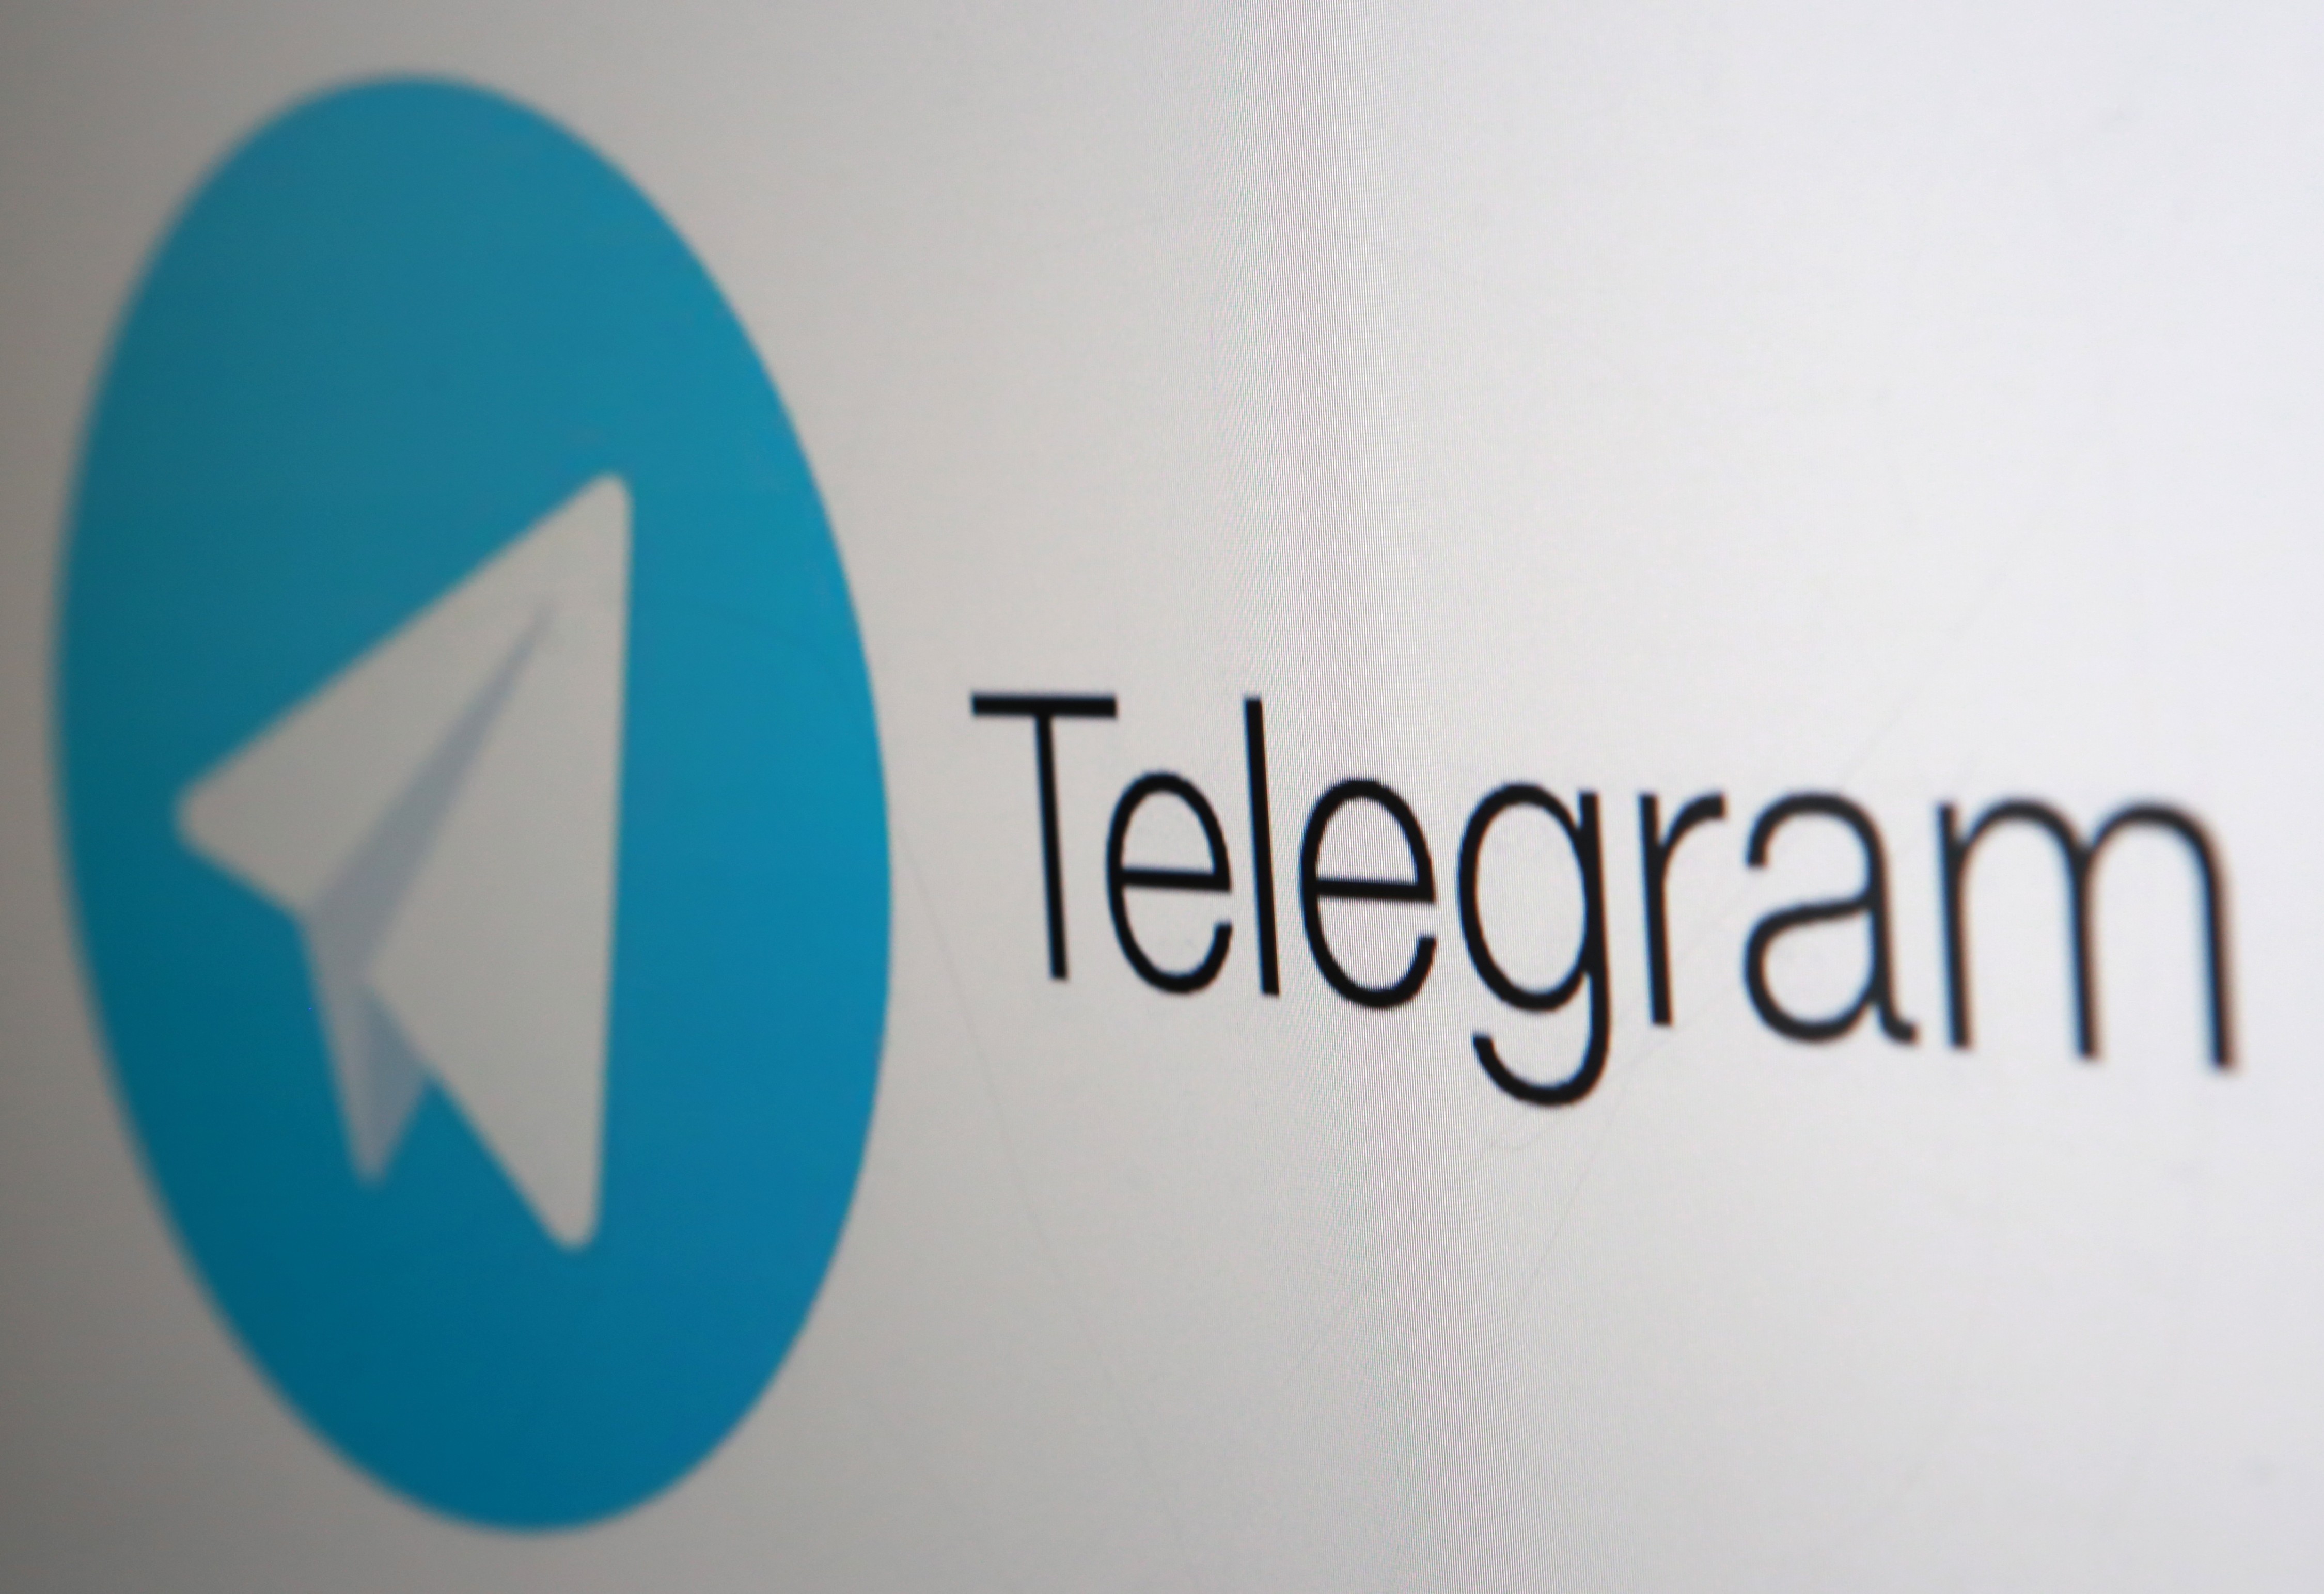 Telegram pictures. Телеграмм. Компания телеграмм. Мессенджер телеграм. Компания телеграмм логотип.